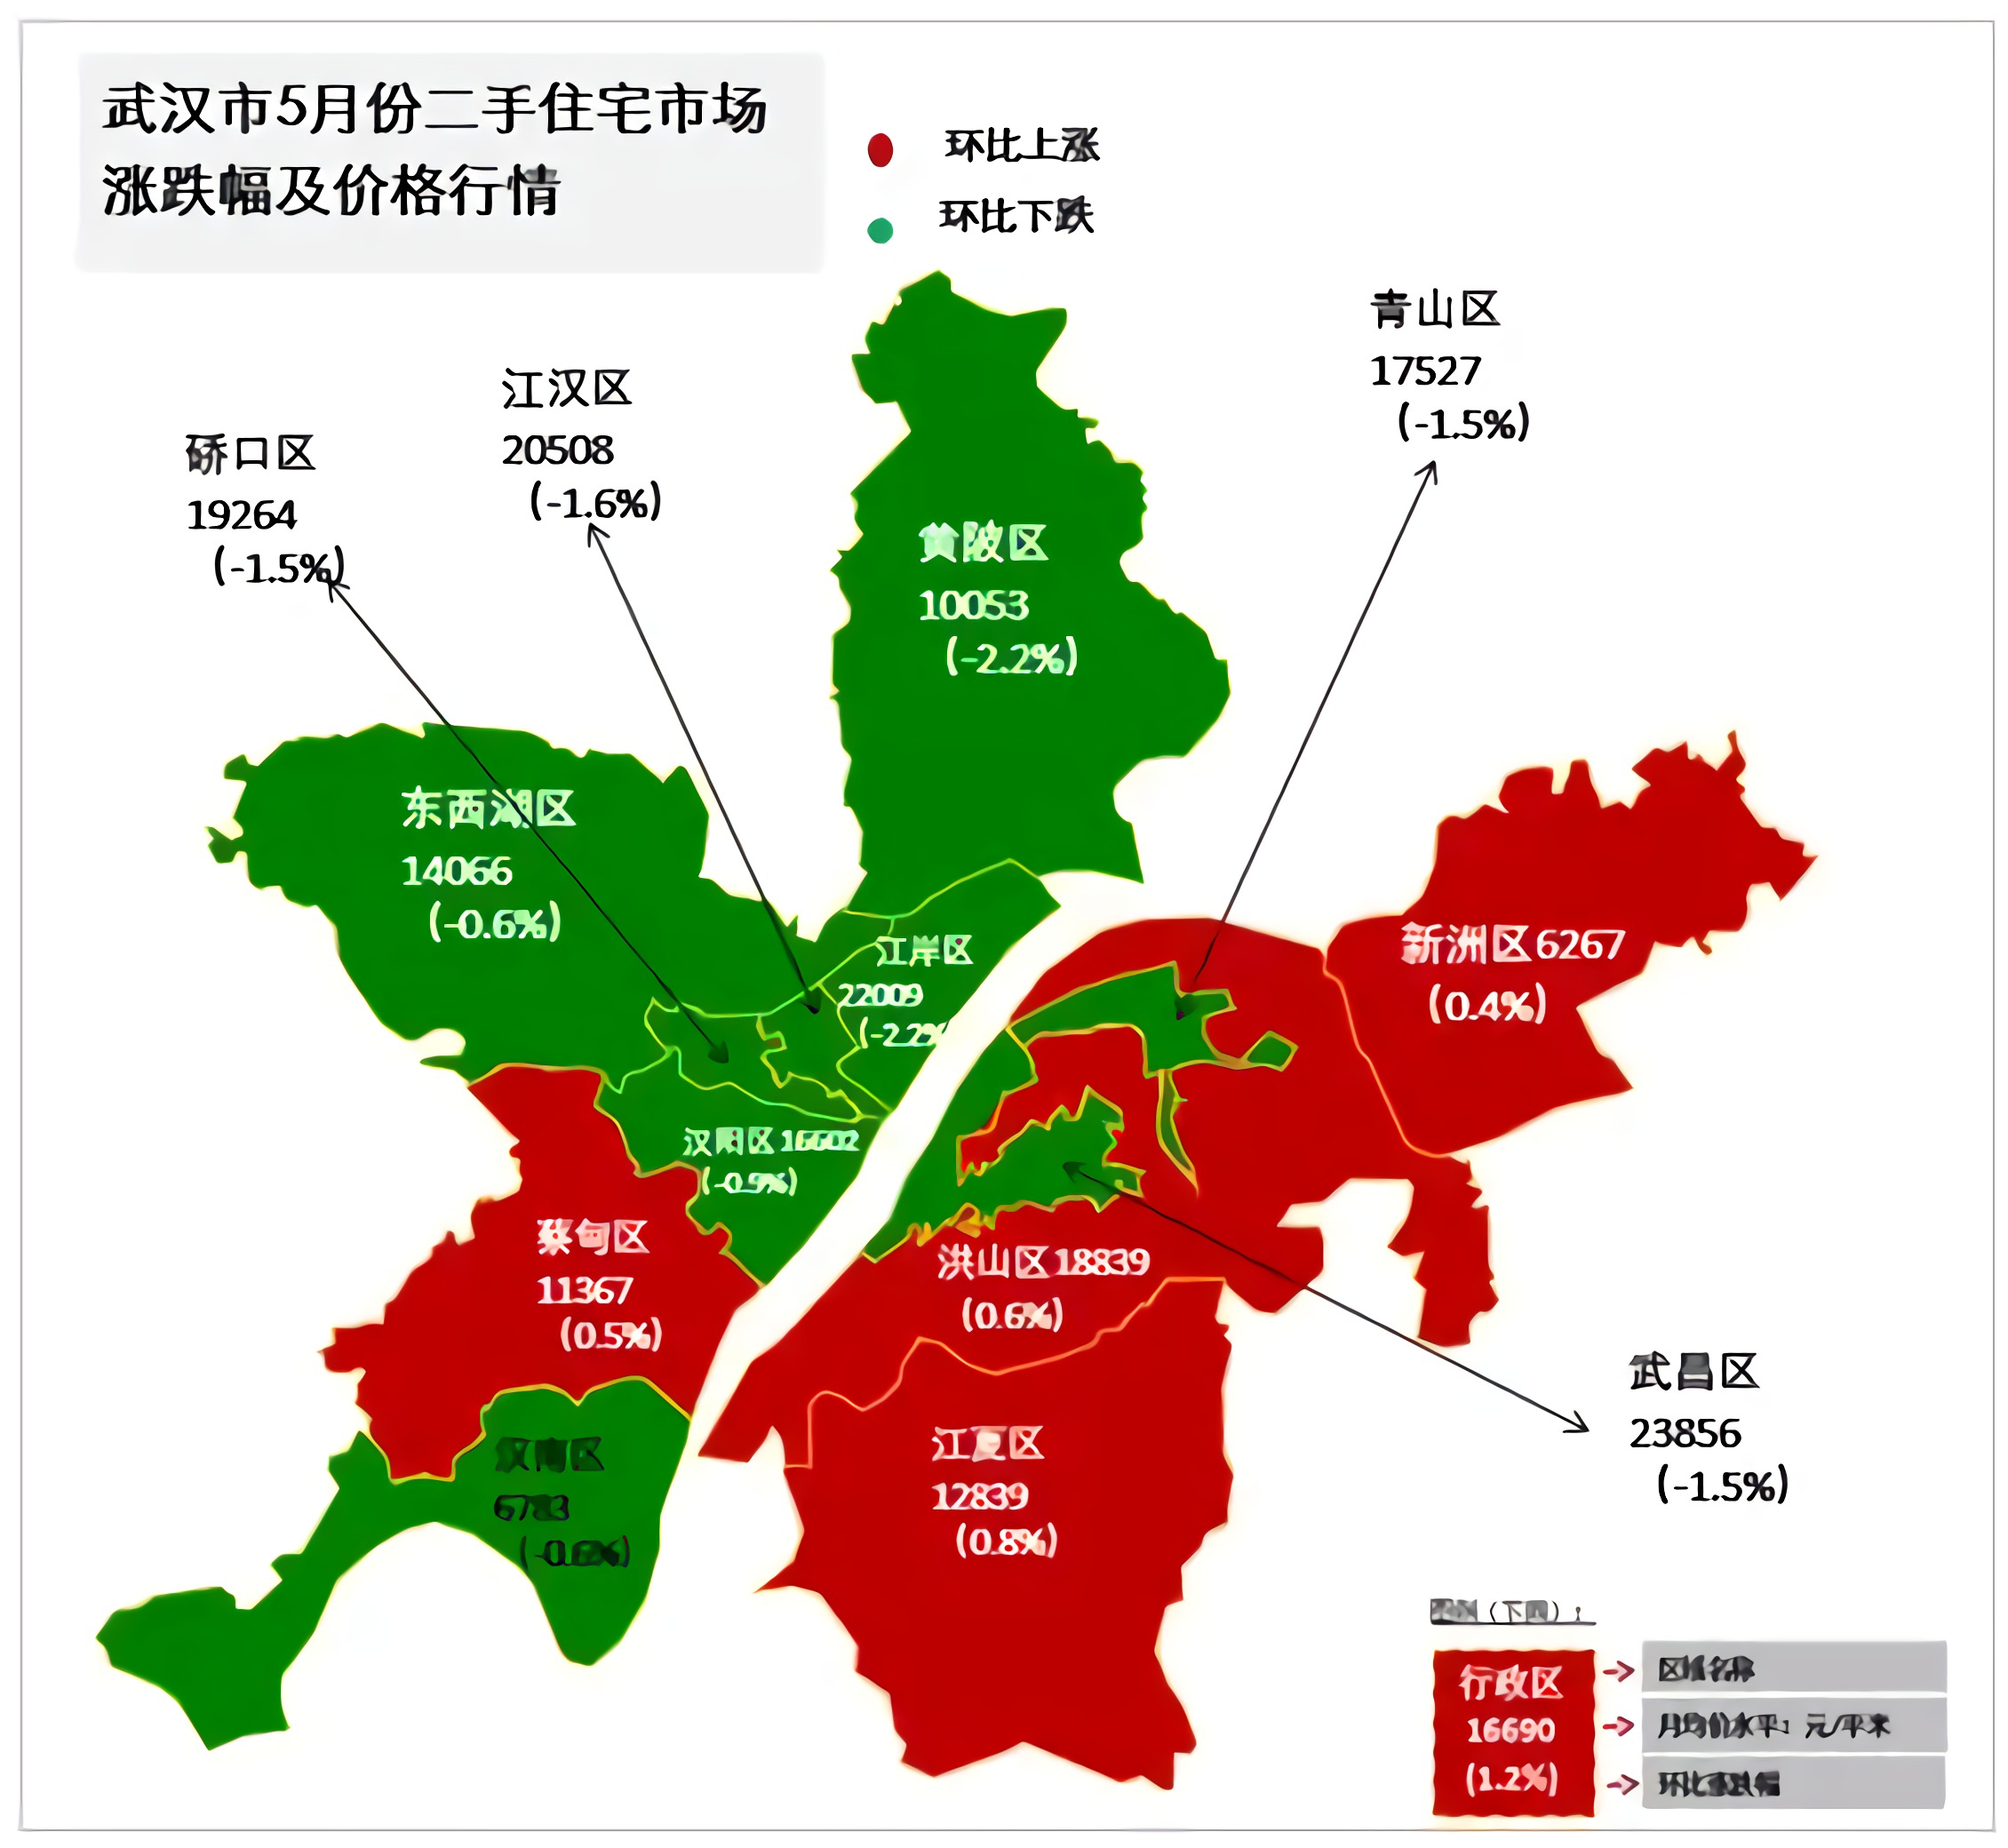 武汉市大多数行政区均价均呈现出小幅度的下跌.其中洪山区,蔡甸